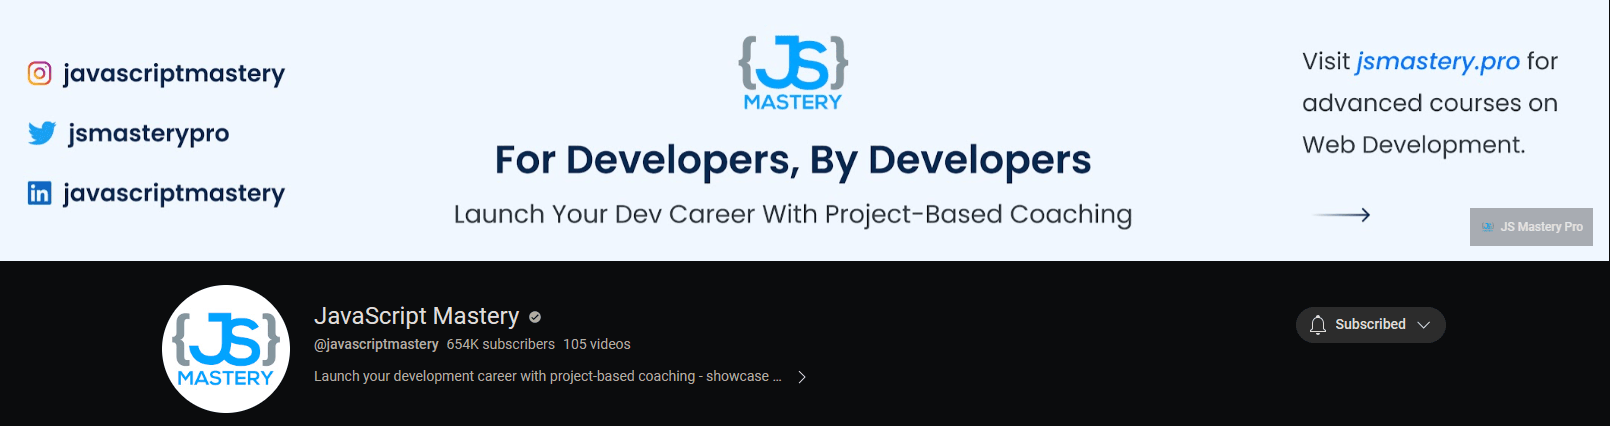 Javascript Mastery